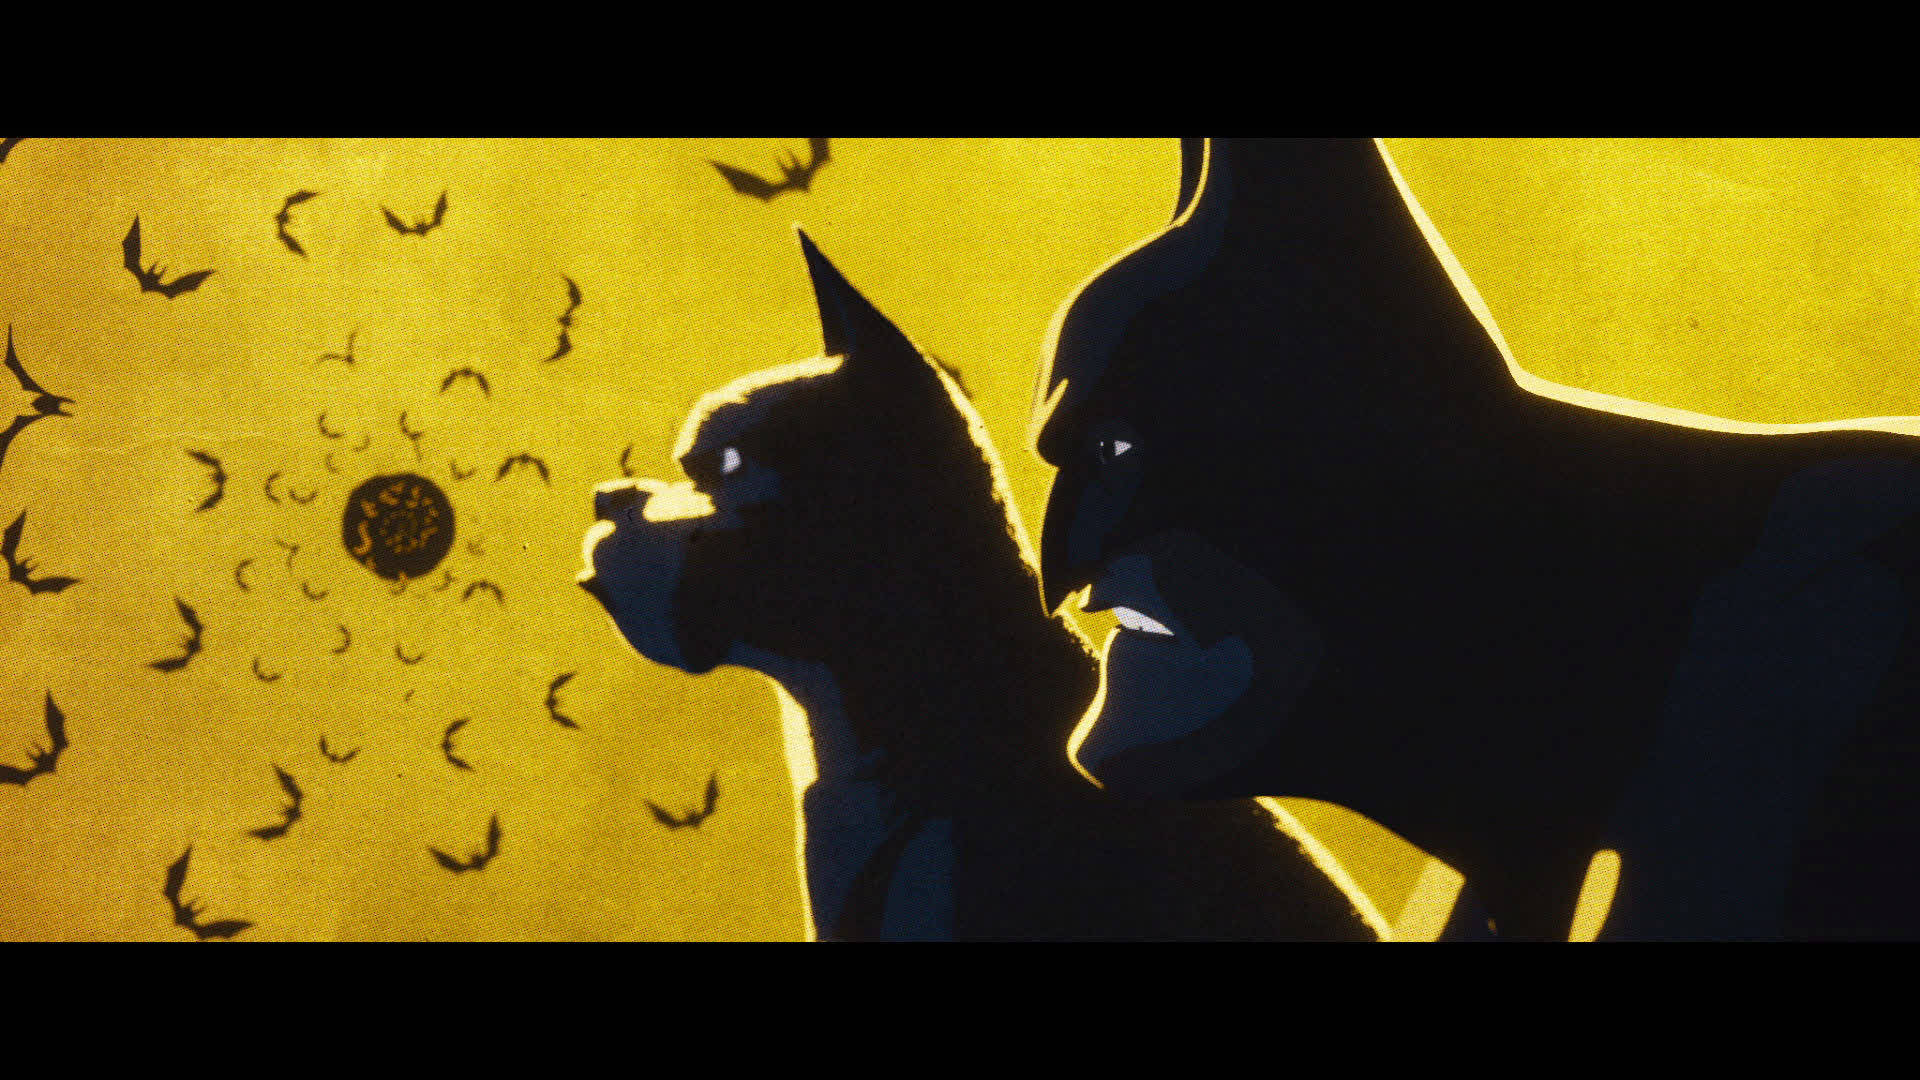 DC Liga af Superpirer Silhuet viser smukke silhuetter af de superhelt hunde og katte. Wallpaper